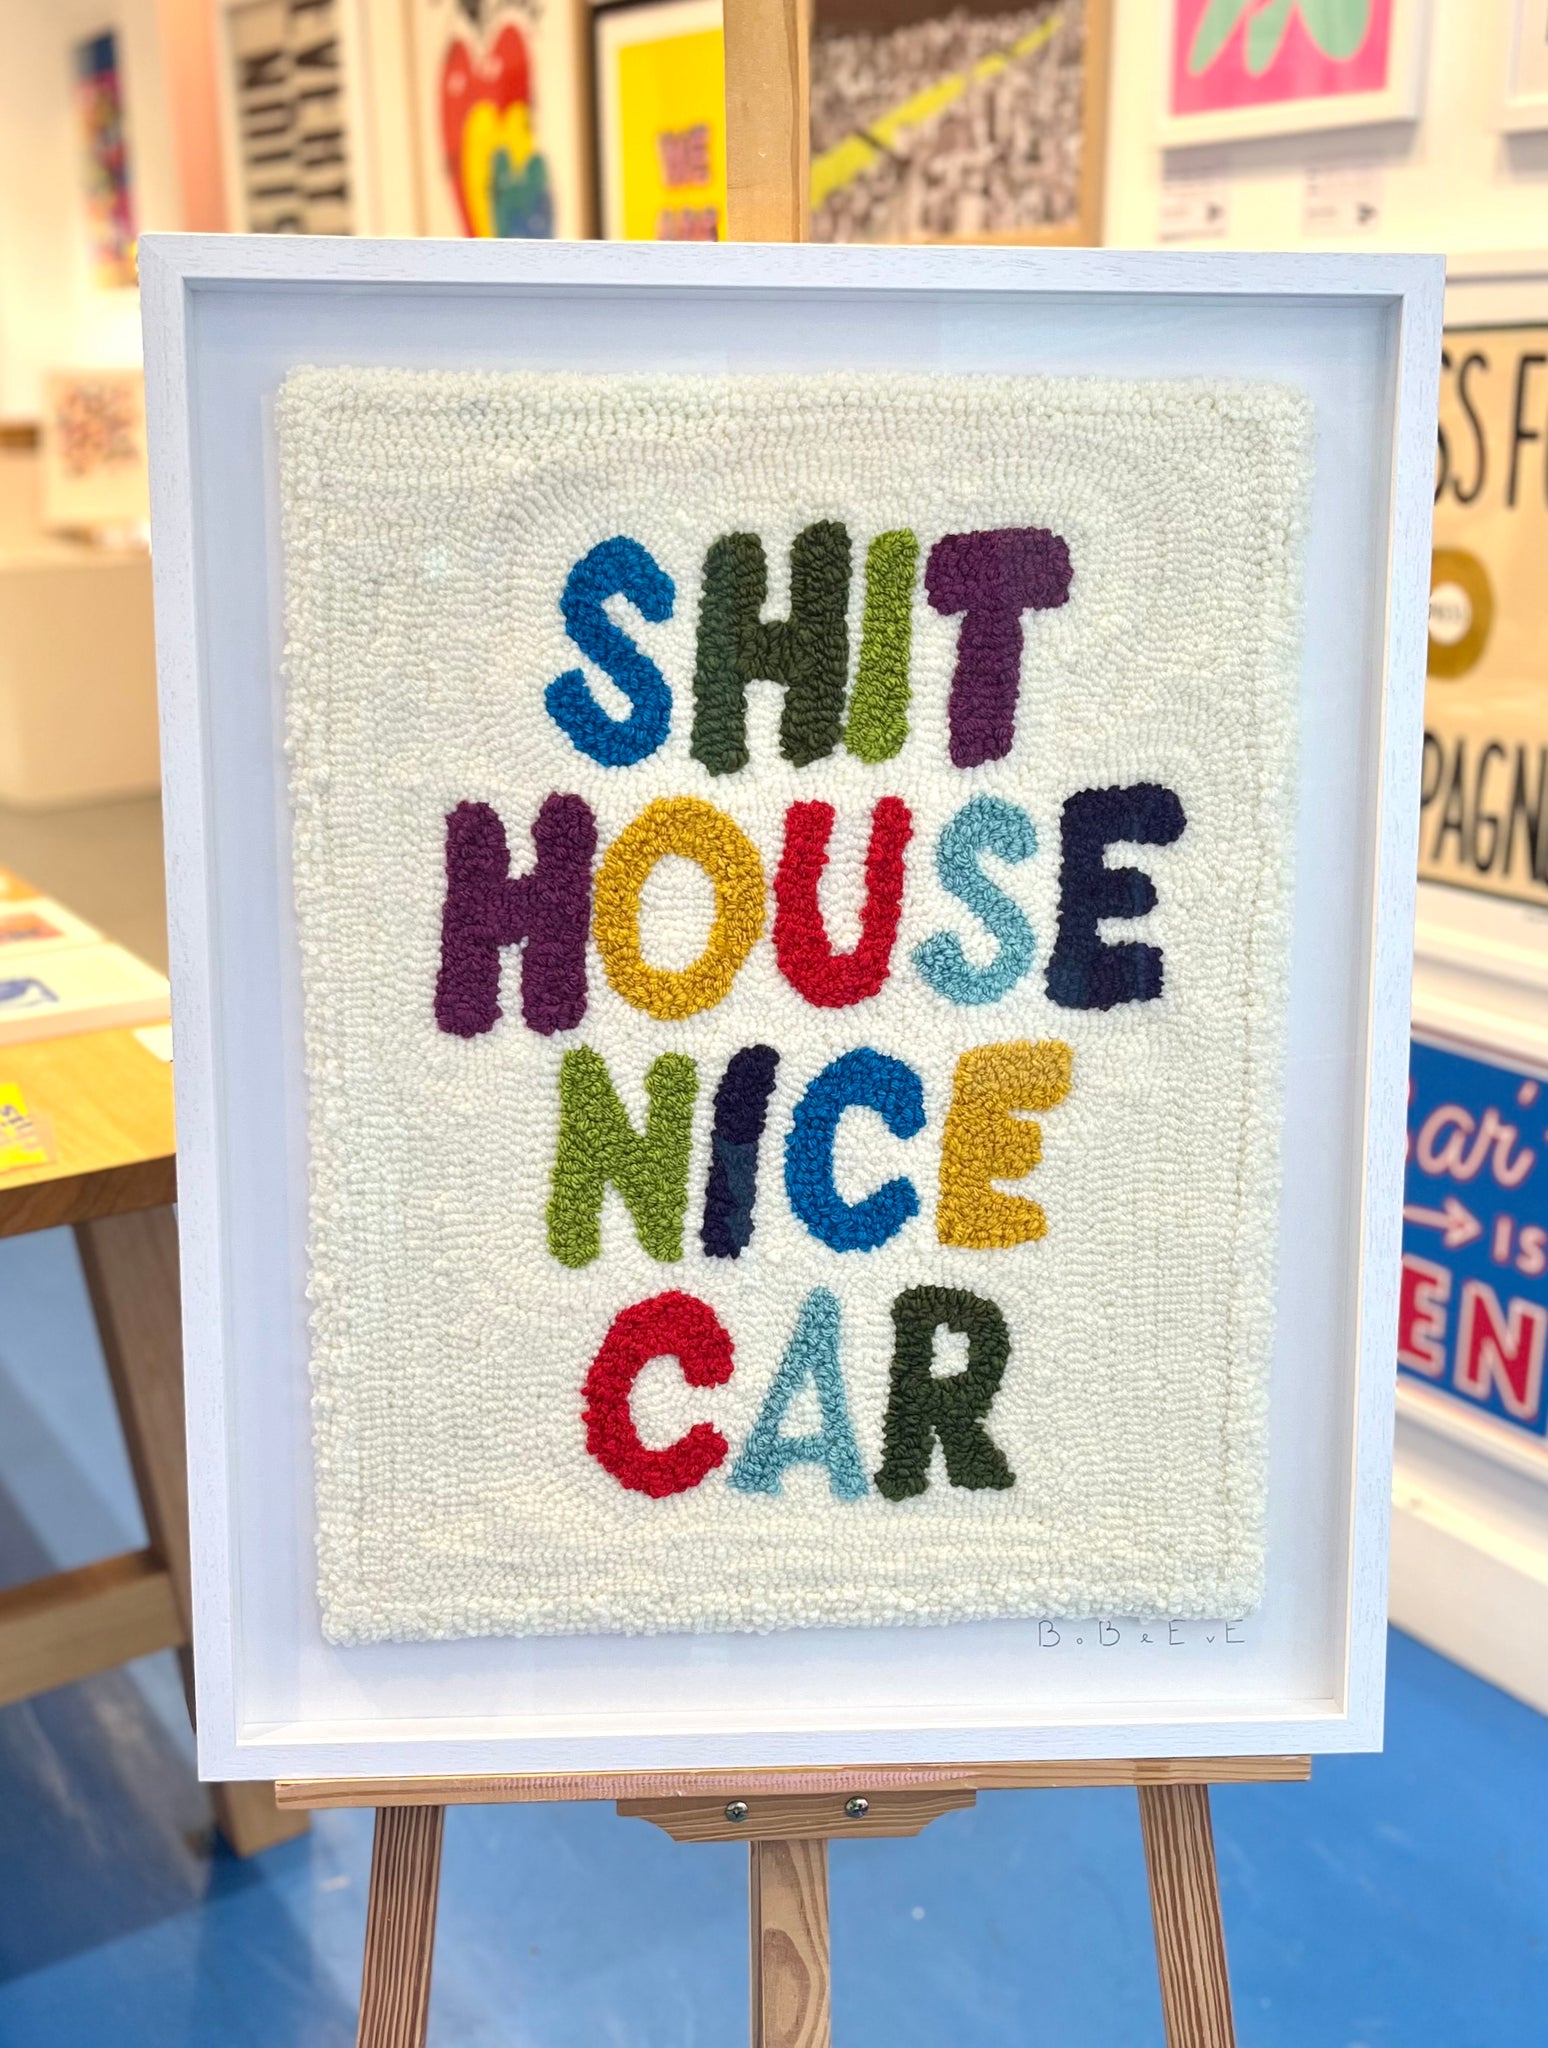 Shit house, nice car